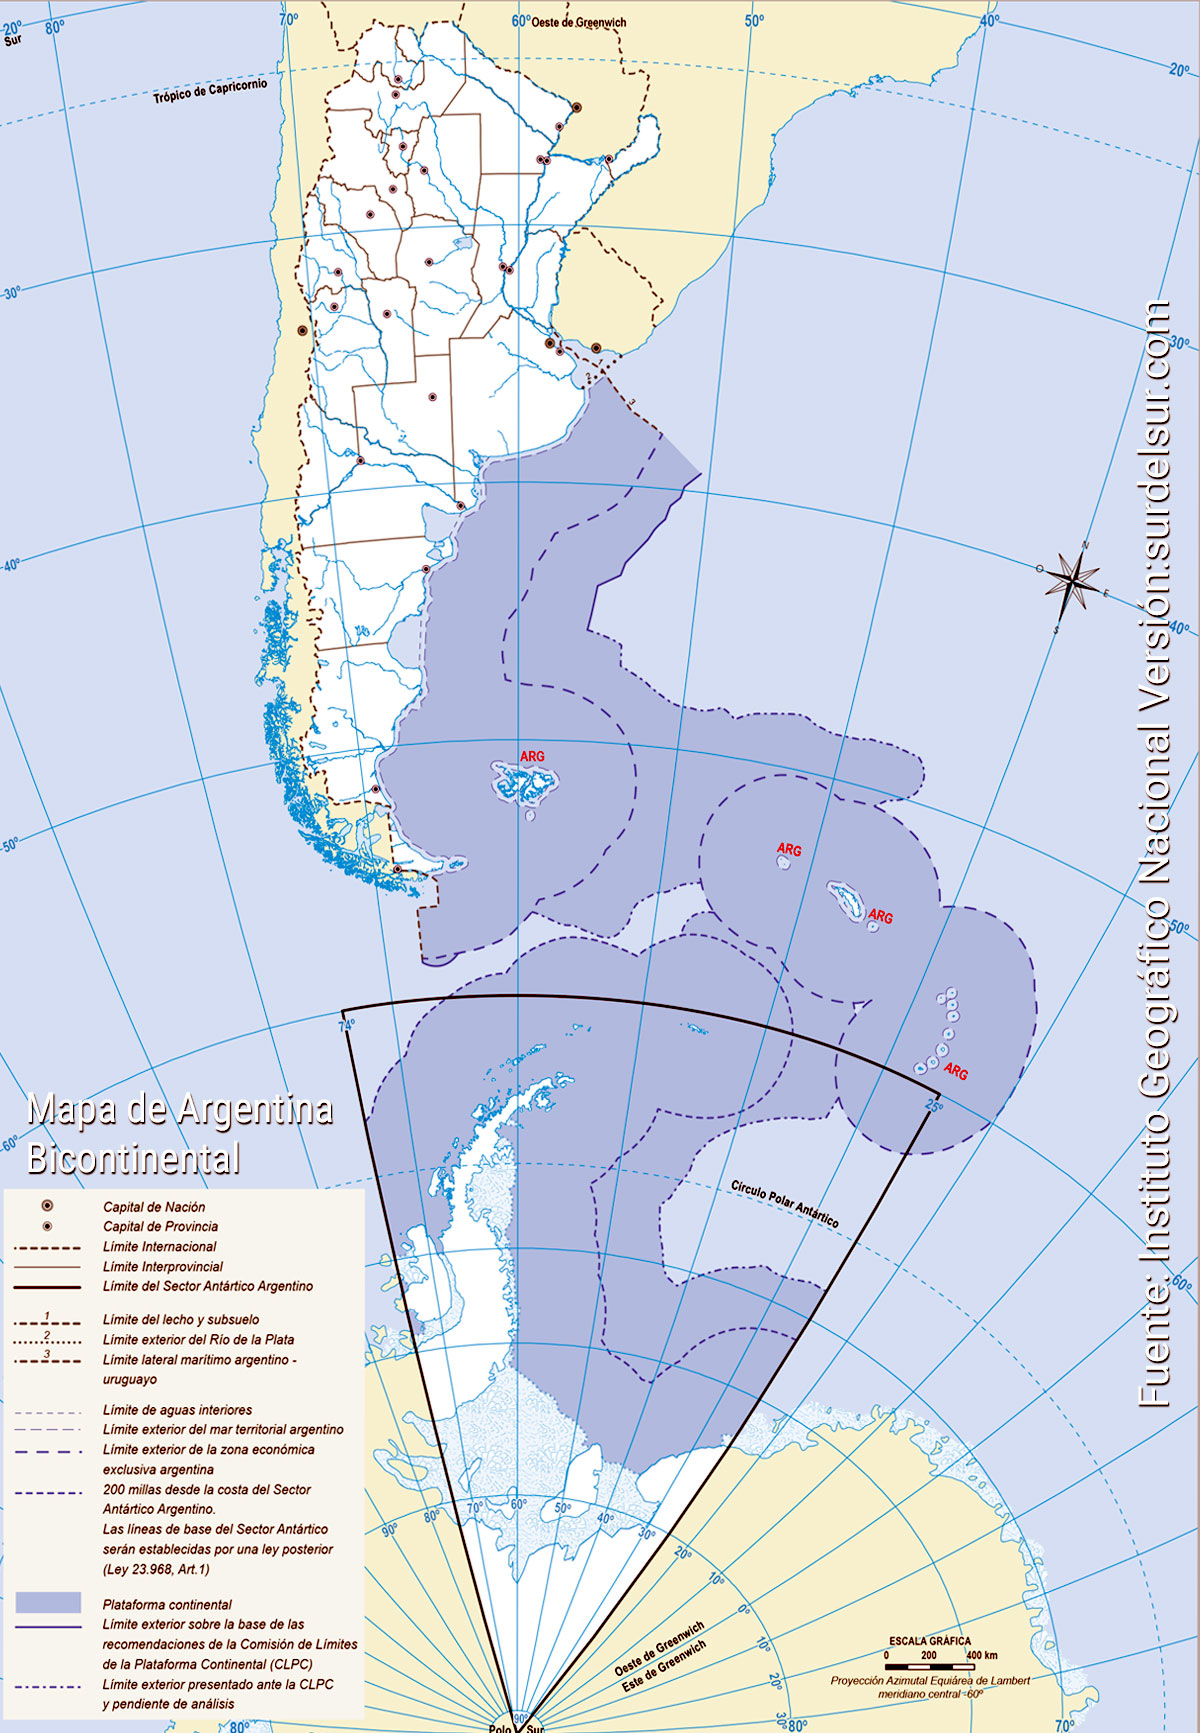 Mapa de la República Argentina bicontinental, con división política en provincias con sus capitales. Mudo. Espacio continental americano y antártico, el espacio insular y marítimo, todo en la misma escala.